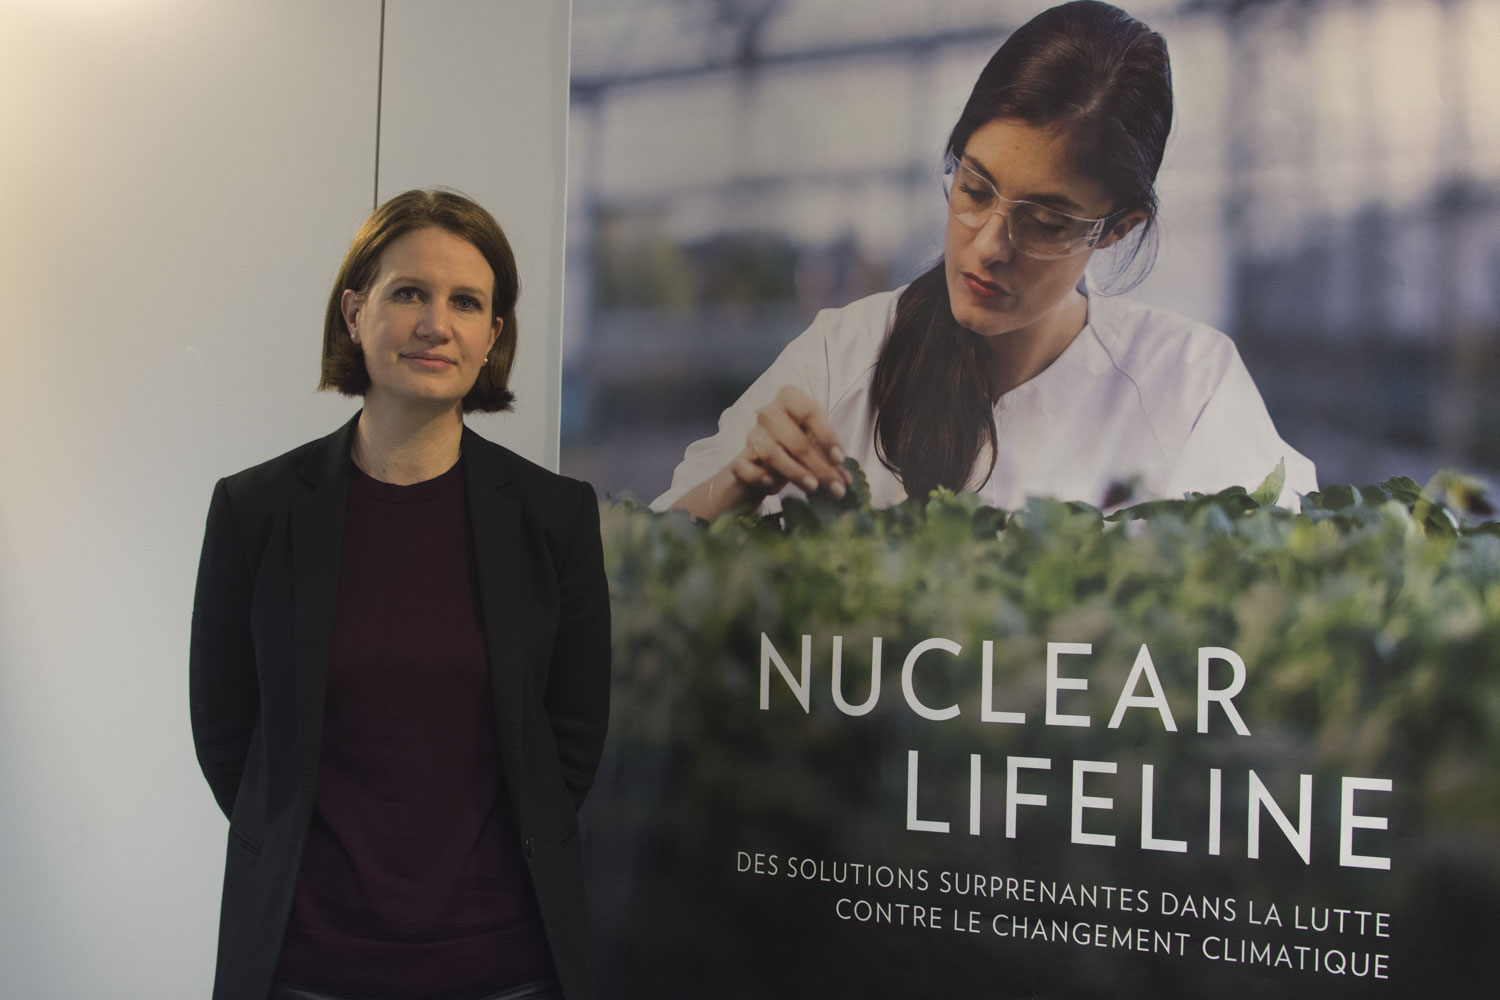 L’organisation professionnelle organise des conférences, des ateliers, des campagnes thématiques pour communiquer sur la technologie nucléaire